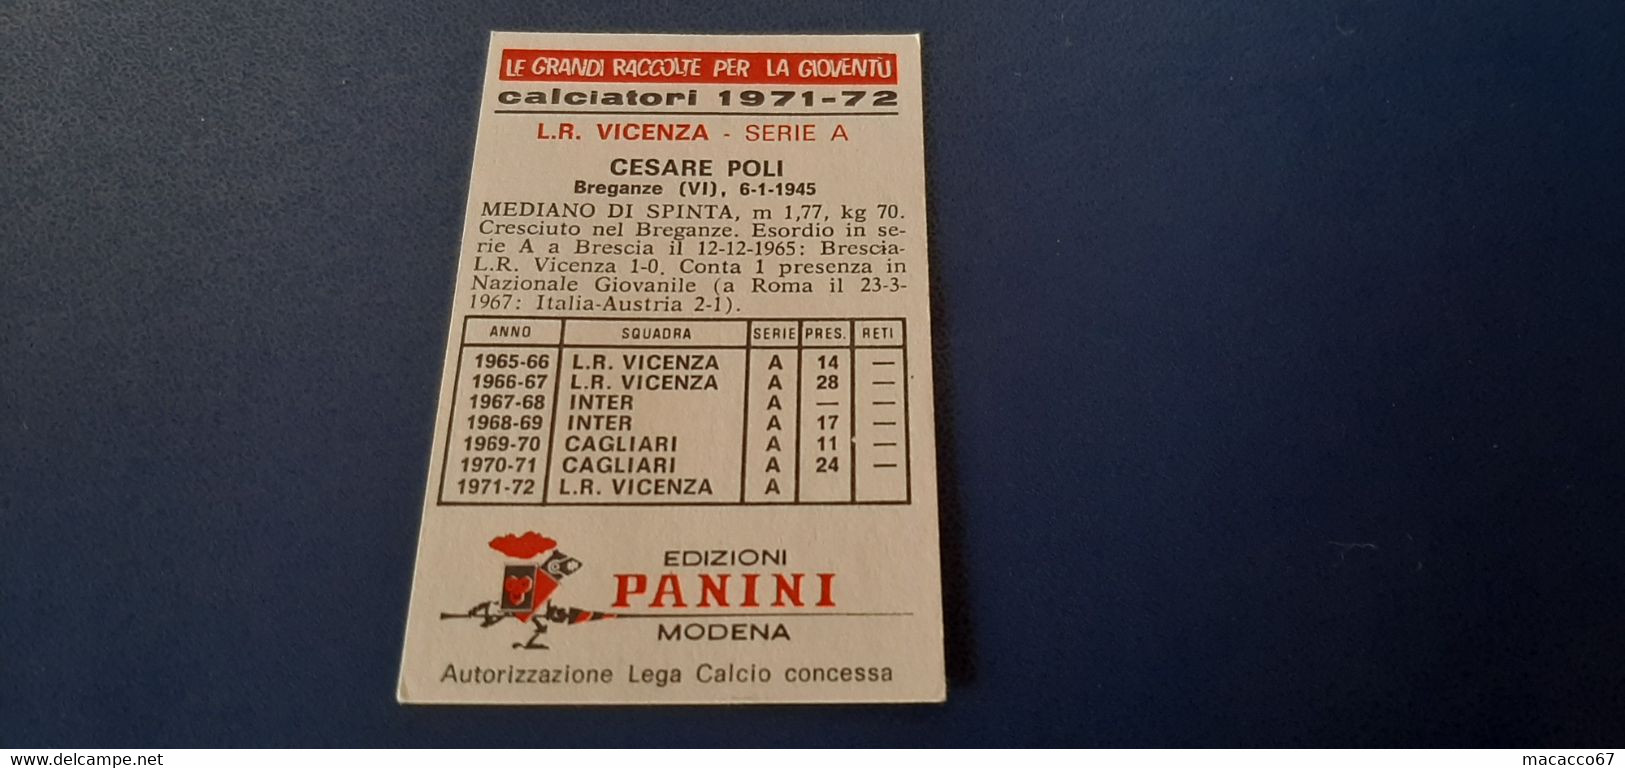 Figurina Calciatori Panini 1971/72 - Poli Lr Vicenza - Edizione Italiana